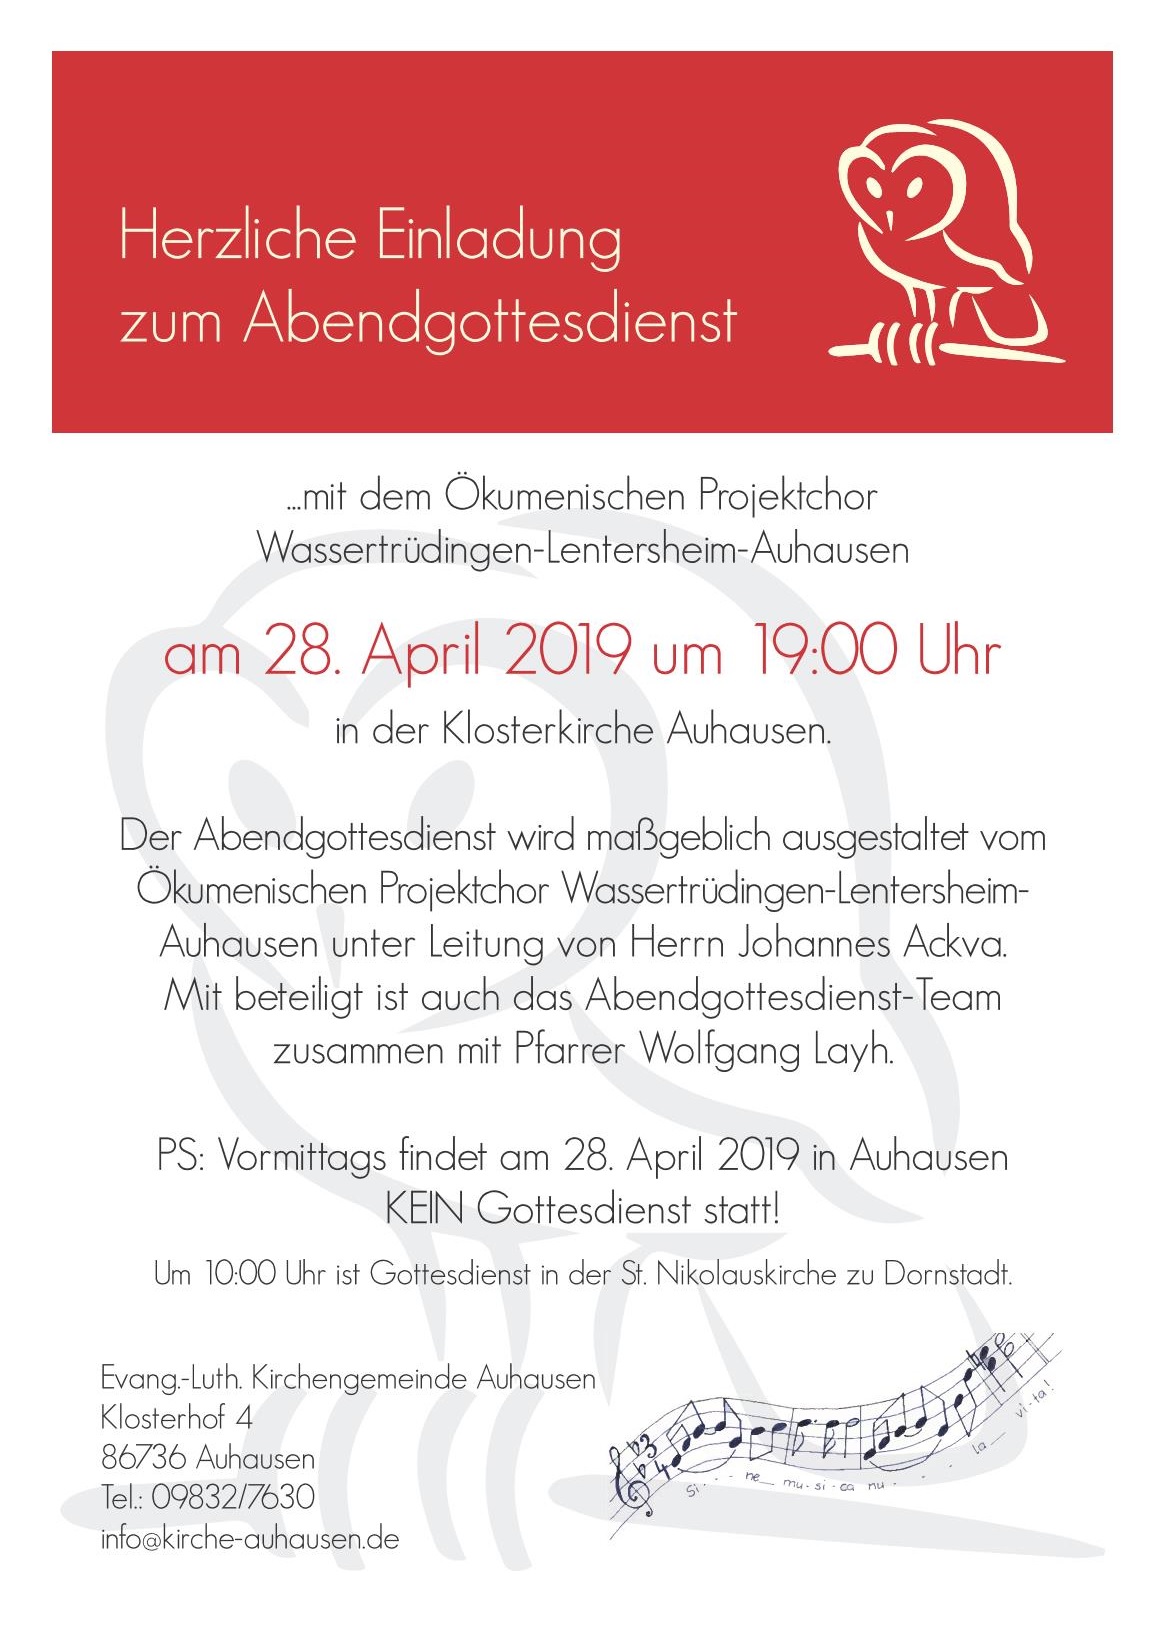 (c) Kirchengemeinde Auhausen - Einladung zum Gottesdienst